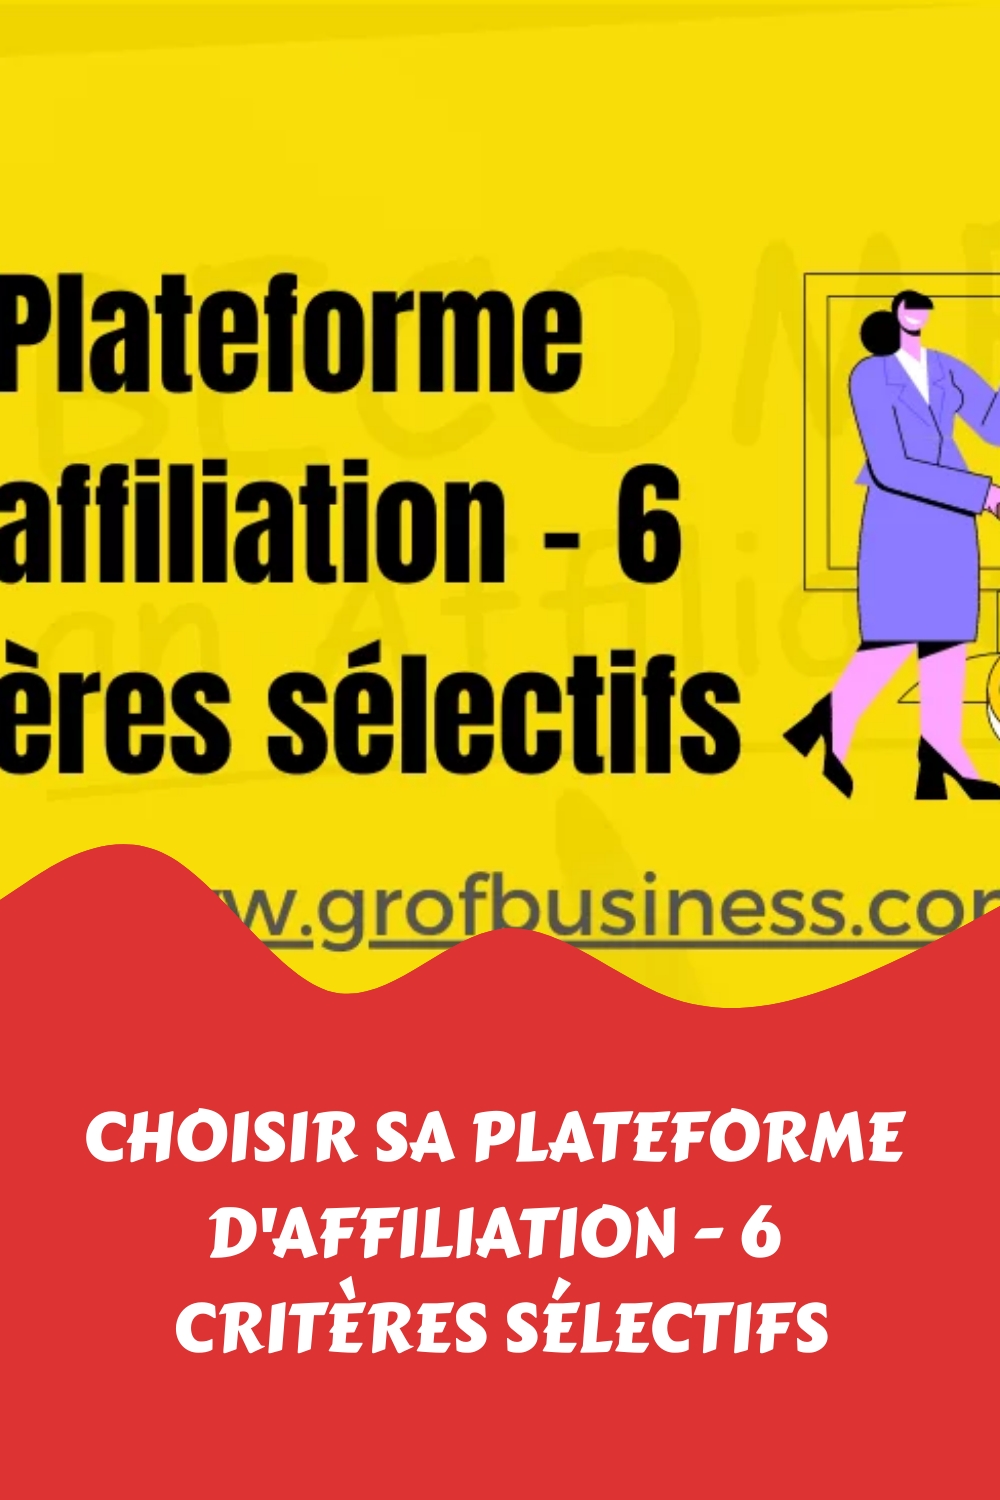 Choisir sa plateforme d'affiliation - 6 critères sélectifs